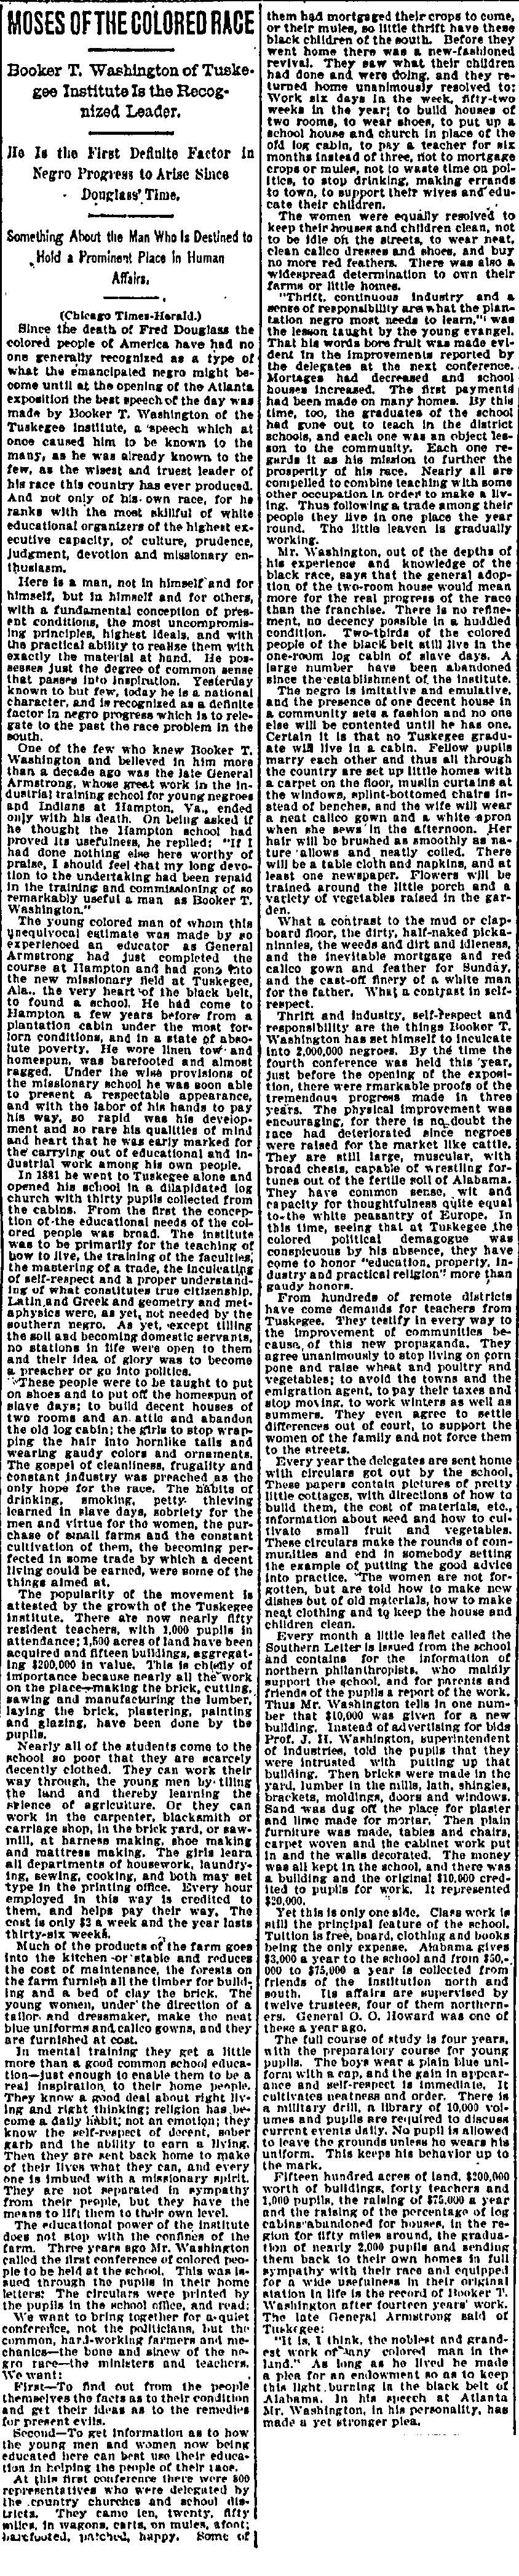 Morning World-Herald. Omaha, Nebraska. October7, 1895.